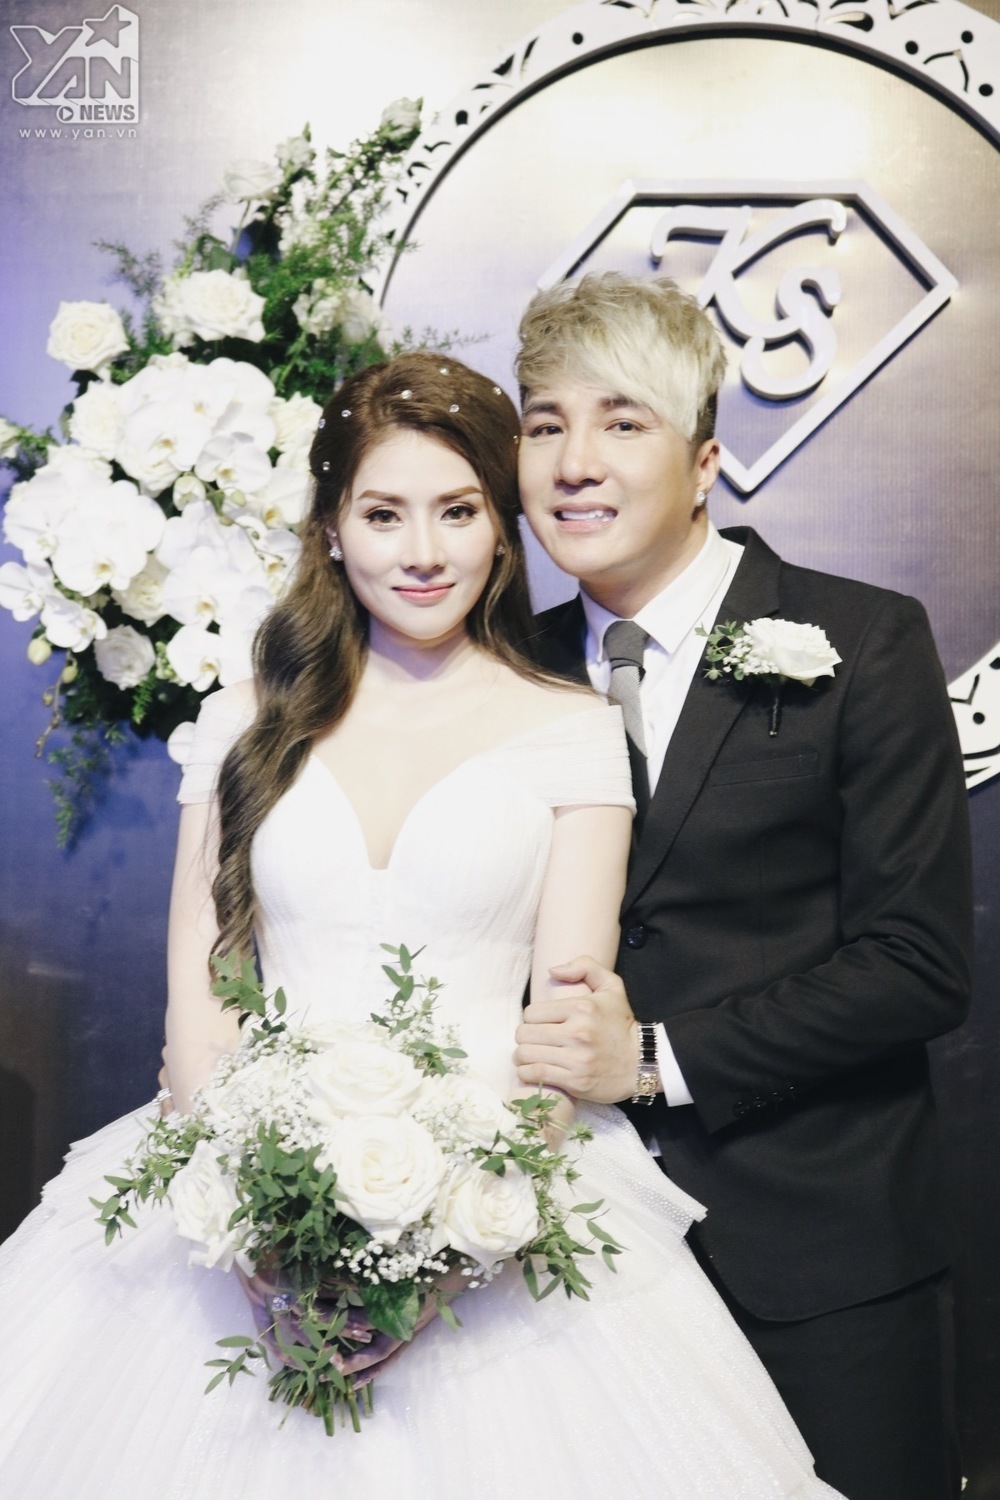 
Lâm Chấn Khang và Kim Jun See chính thức có hôn lễ trong mơ vào tháng 9/2019. (Ảnh: YAN)